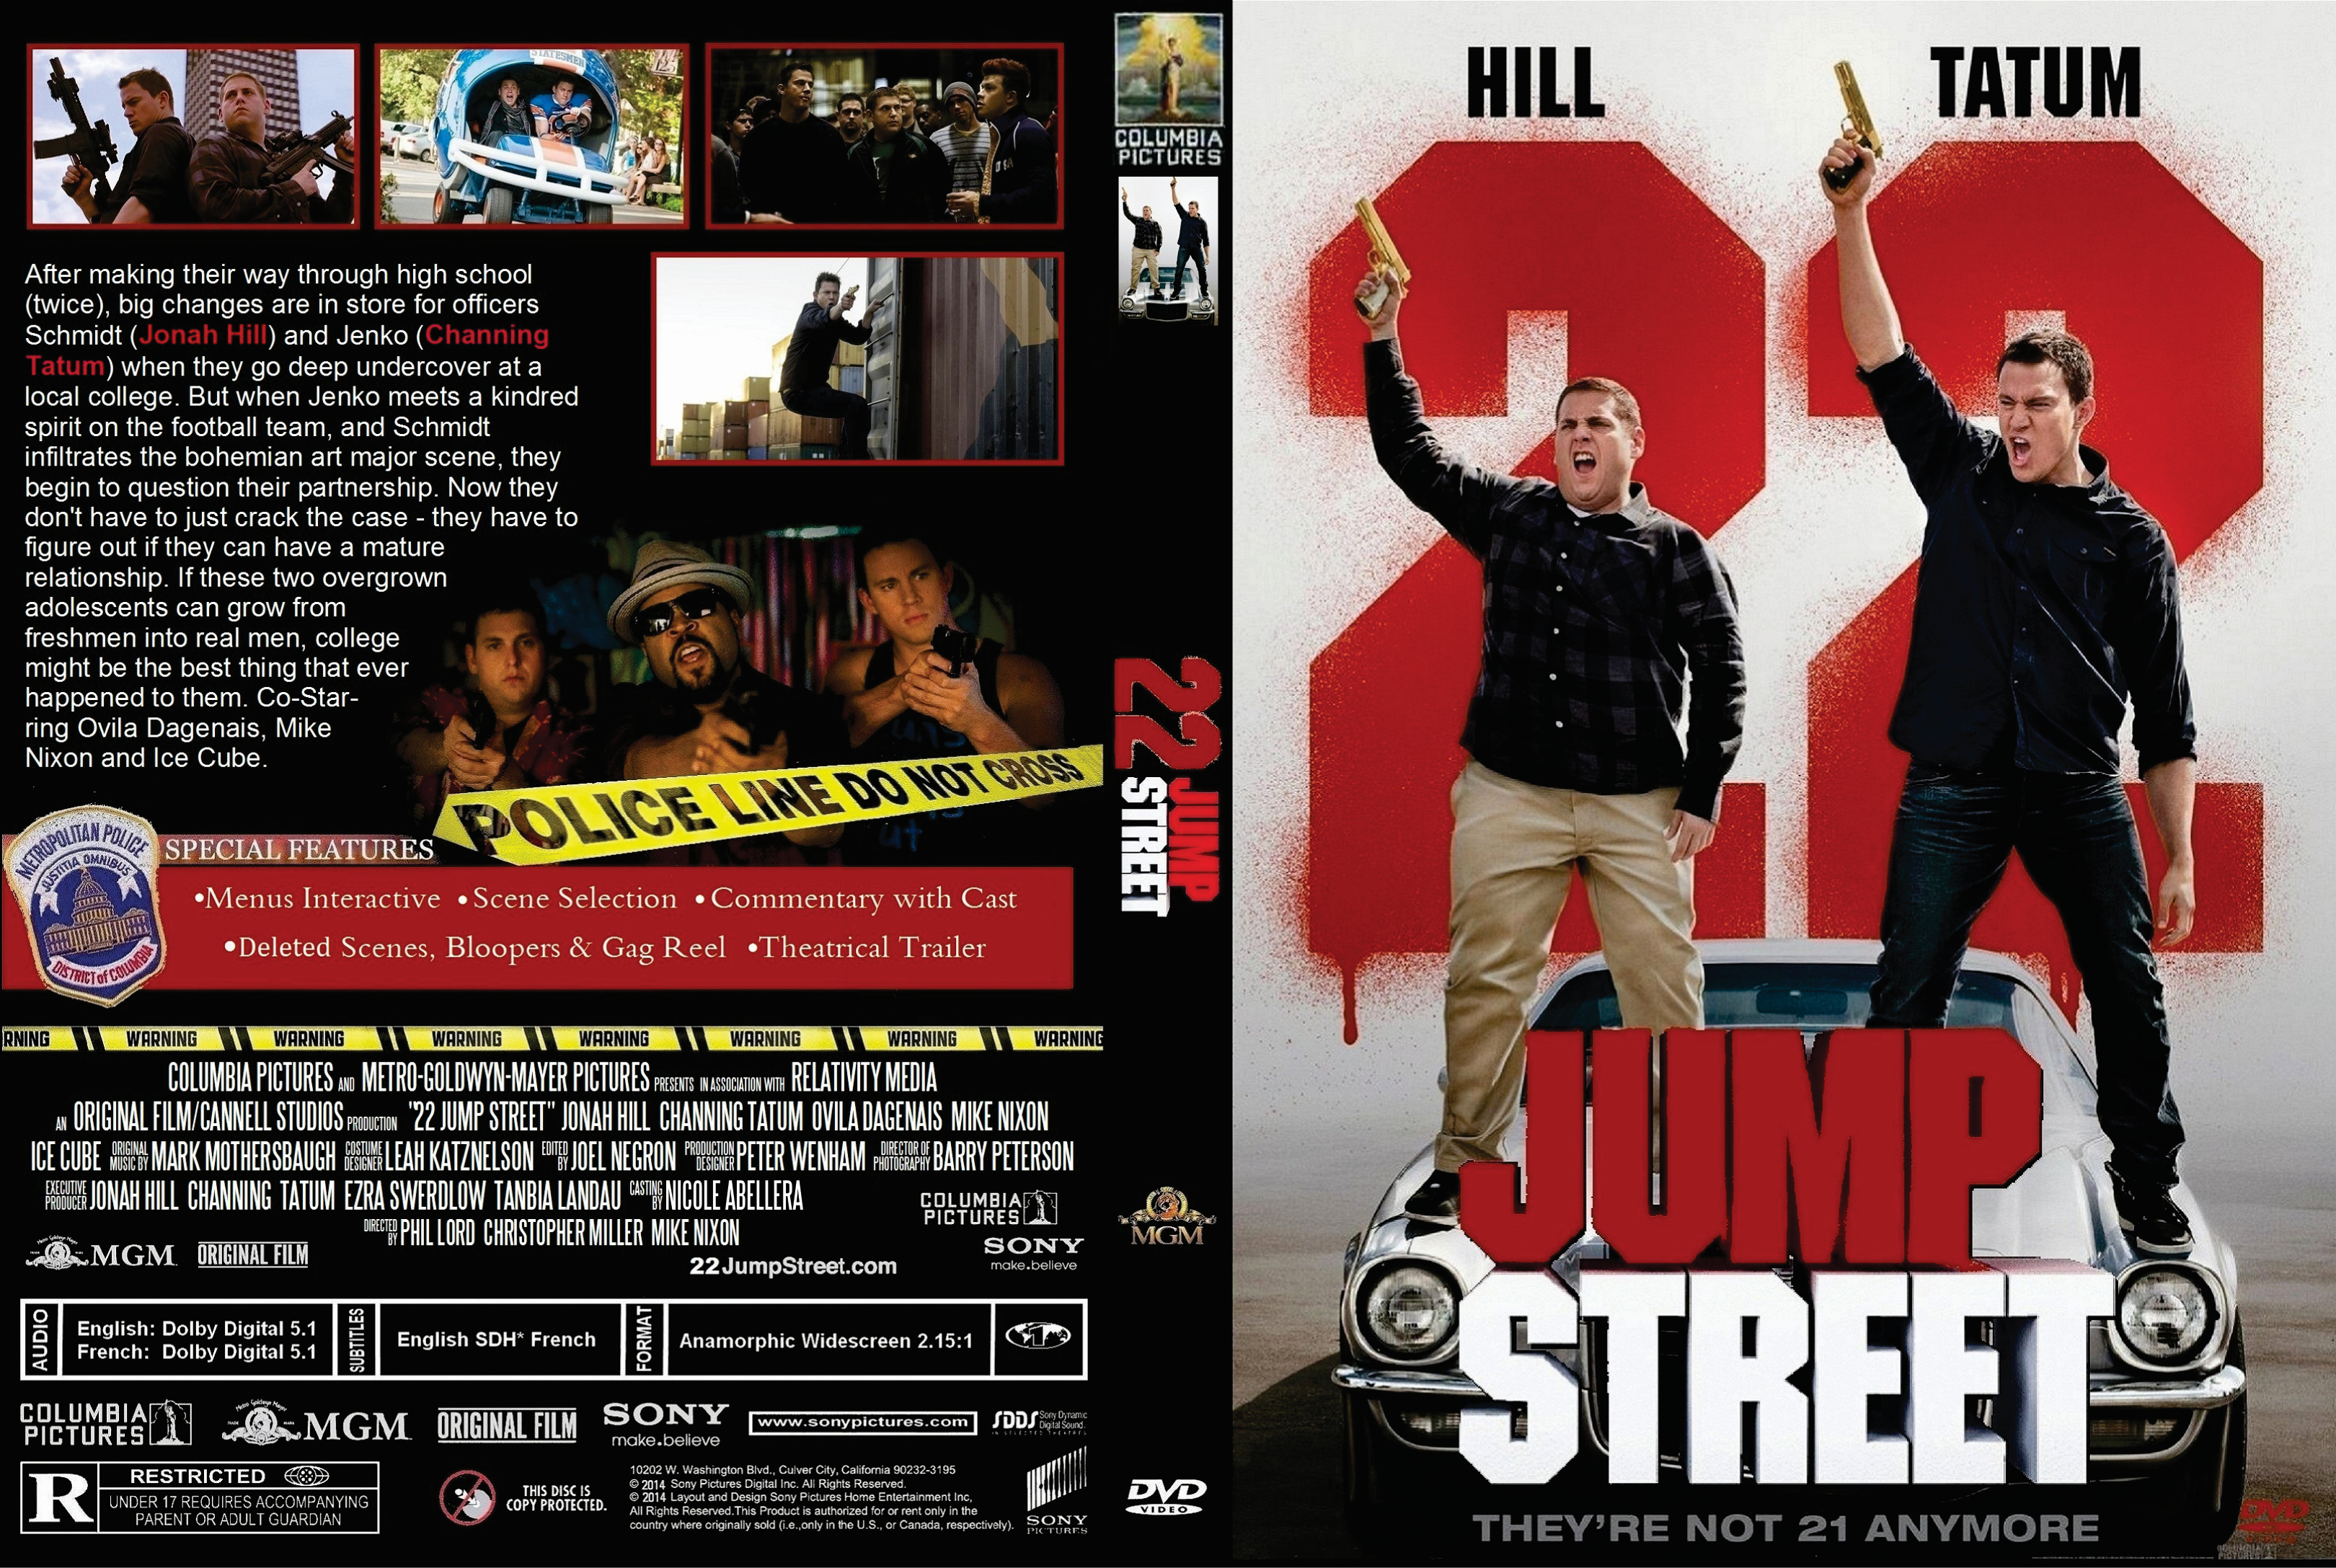 22 jump street full movie download hd